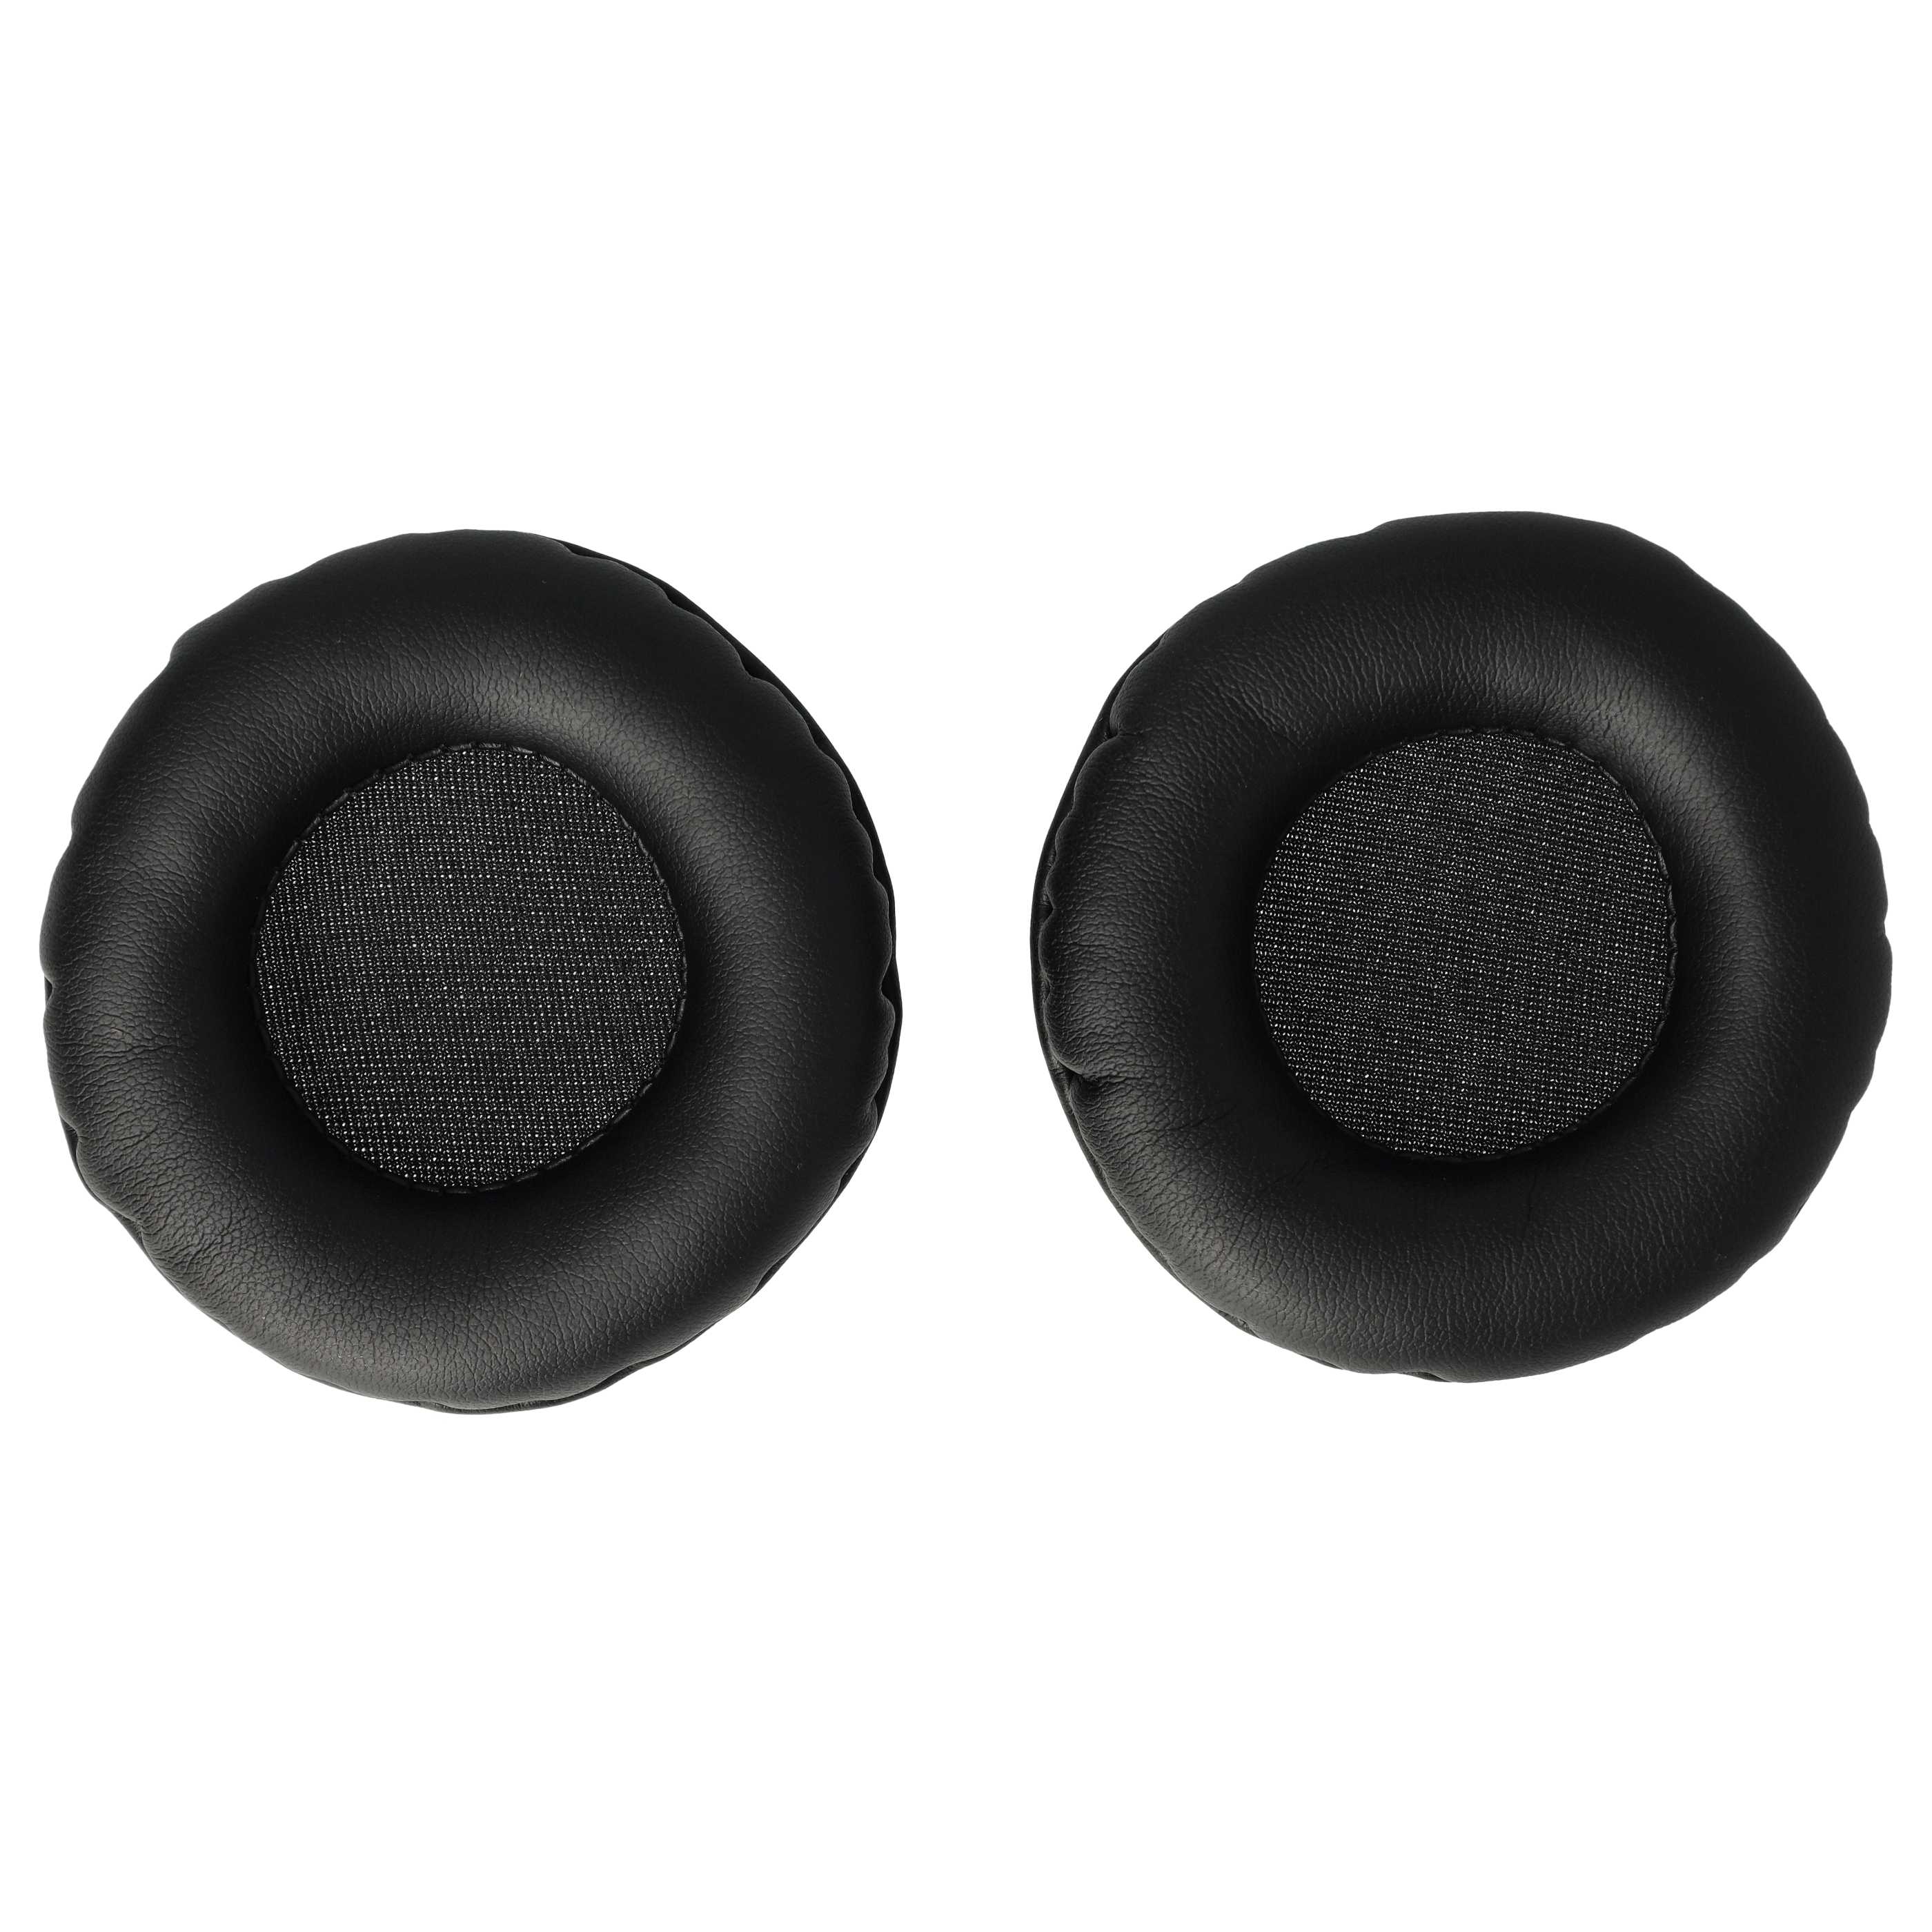 2x Ohrenpolster passend für Kopfhörer, die 65mm Ohrpolster benötigen / t.Bone HD 660 Kopfhörer u.a. - Polyuret